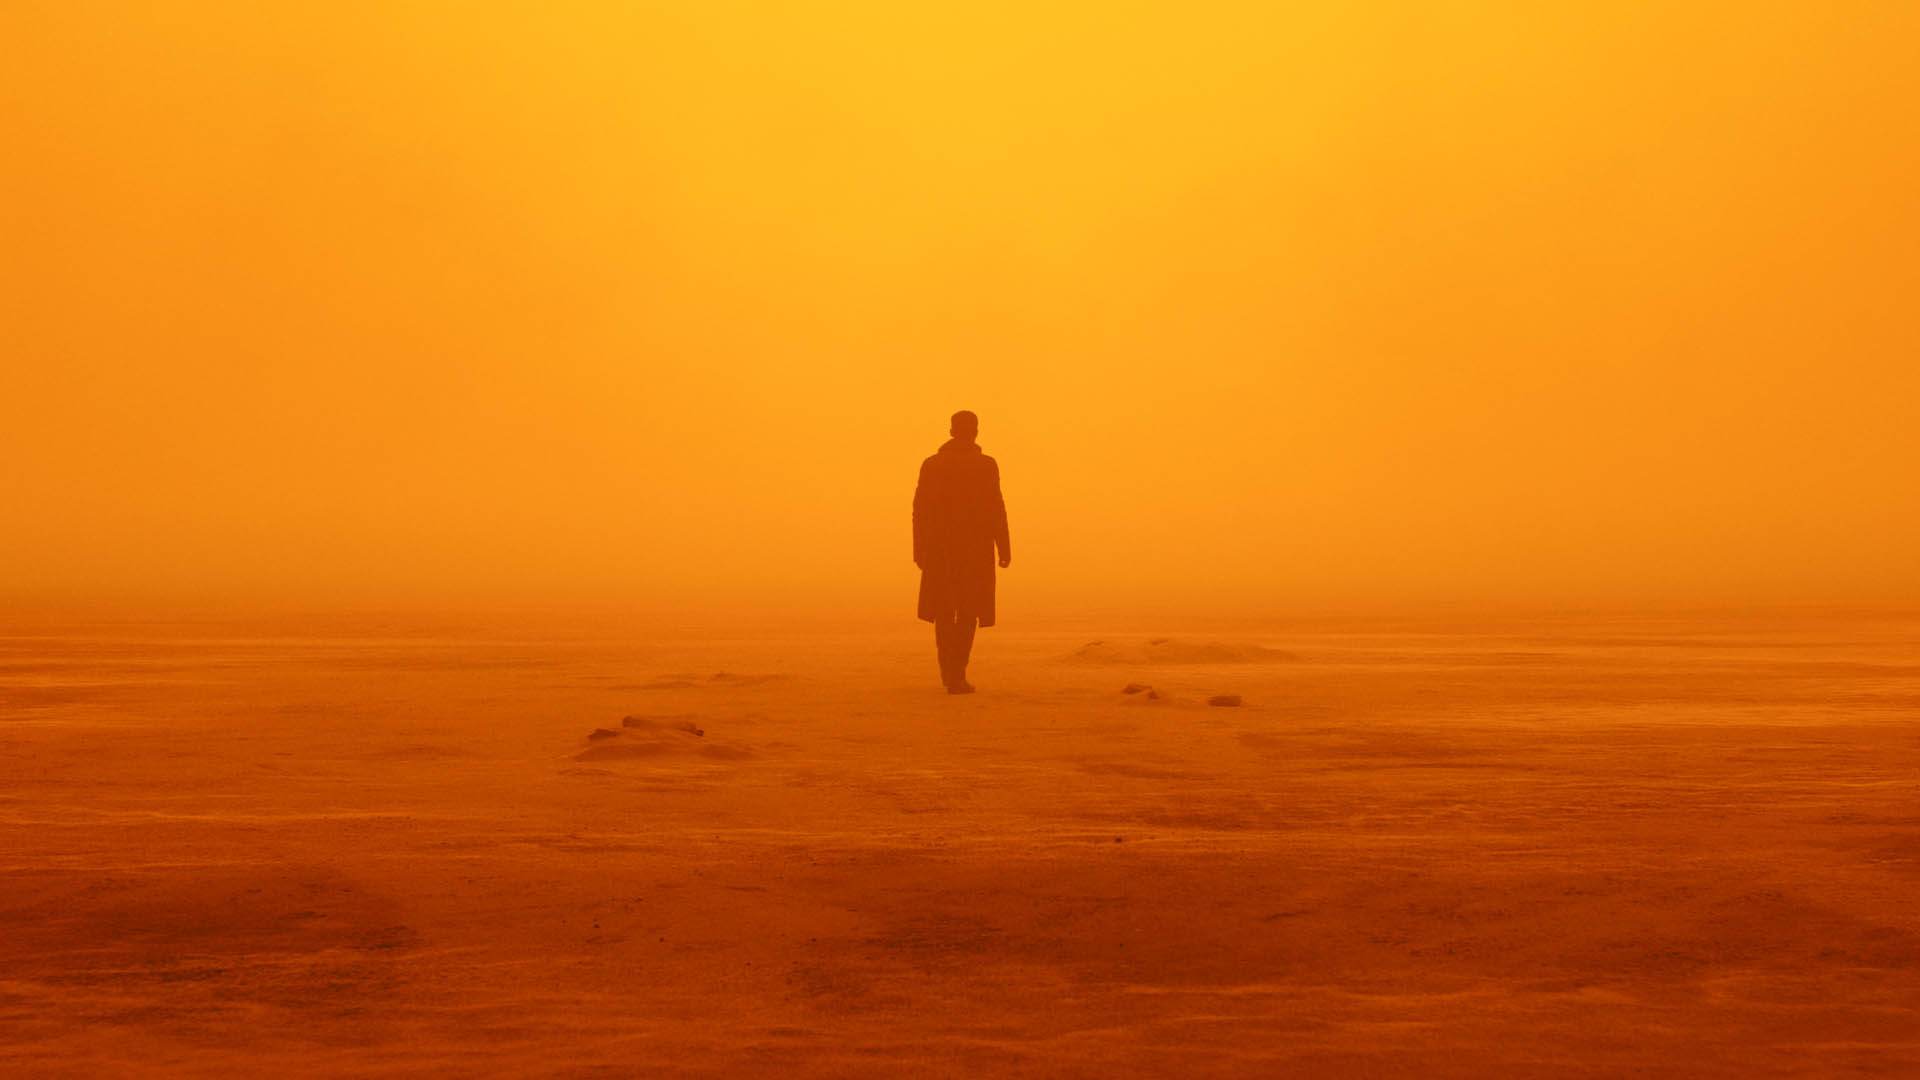 کاور فیلم Blade Runner 2049 با حضور رایان گاسلینگ در یک صحرا